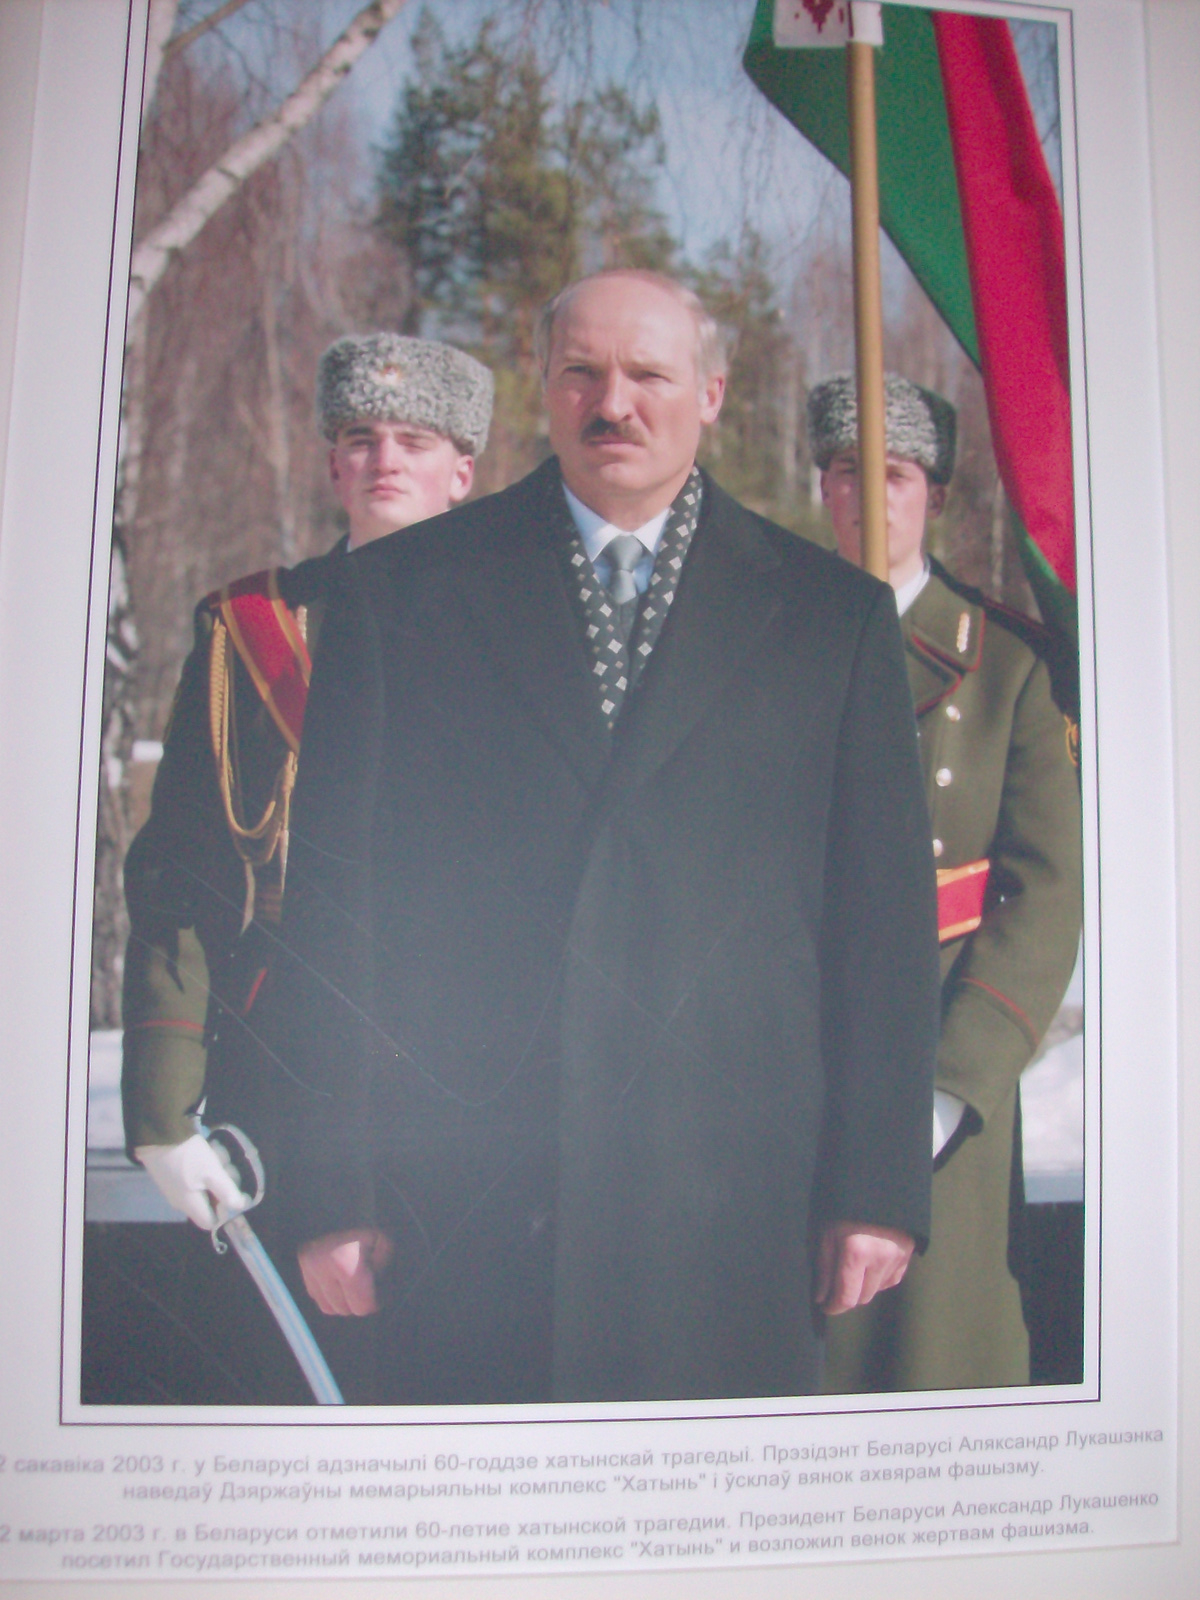 Lukashenko megemlékezésen